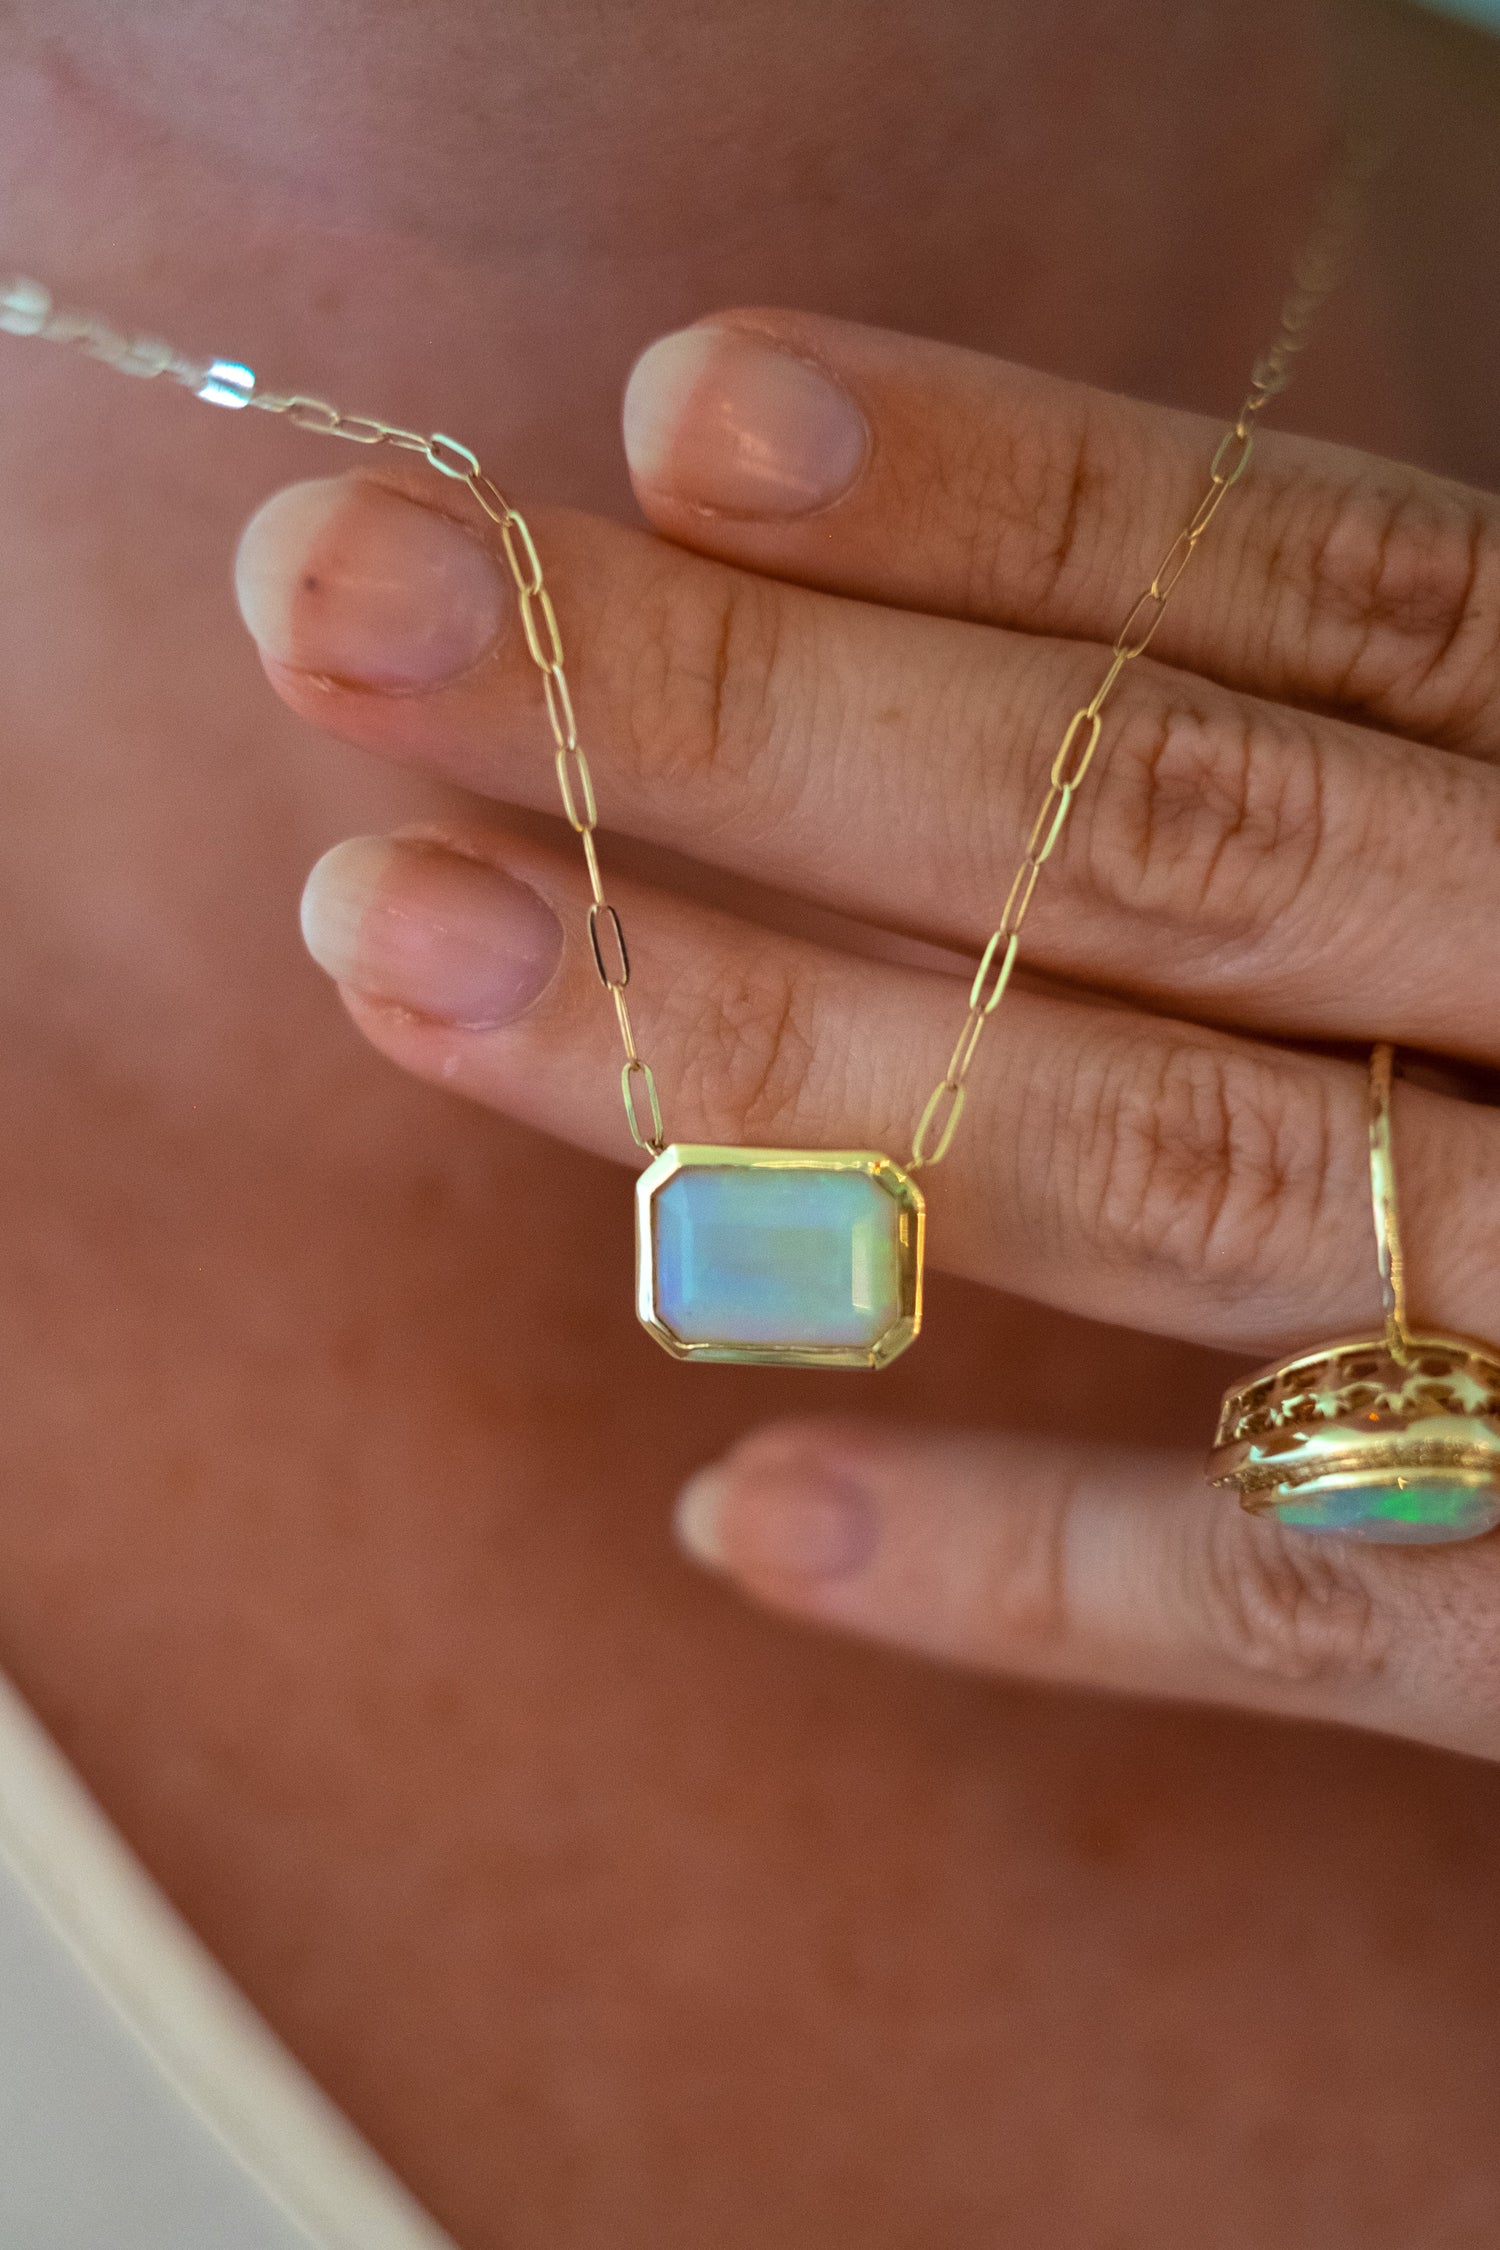 Bezel Set Opal Necklace on Trace Chain